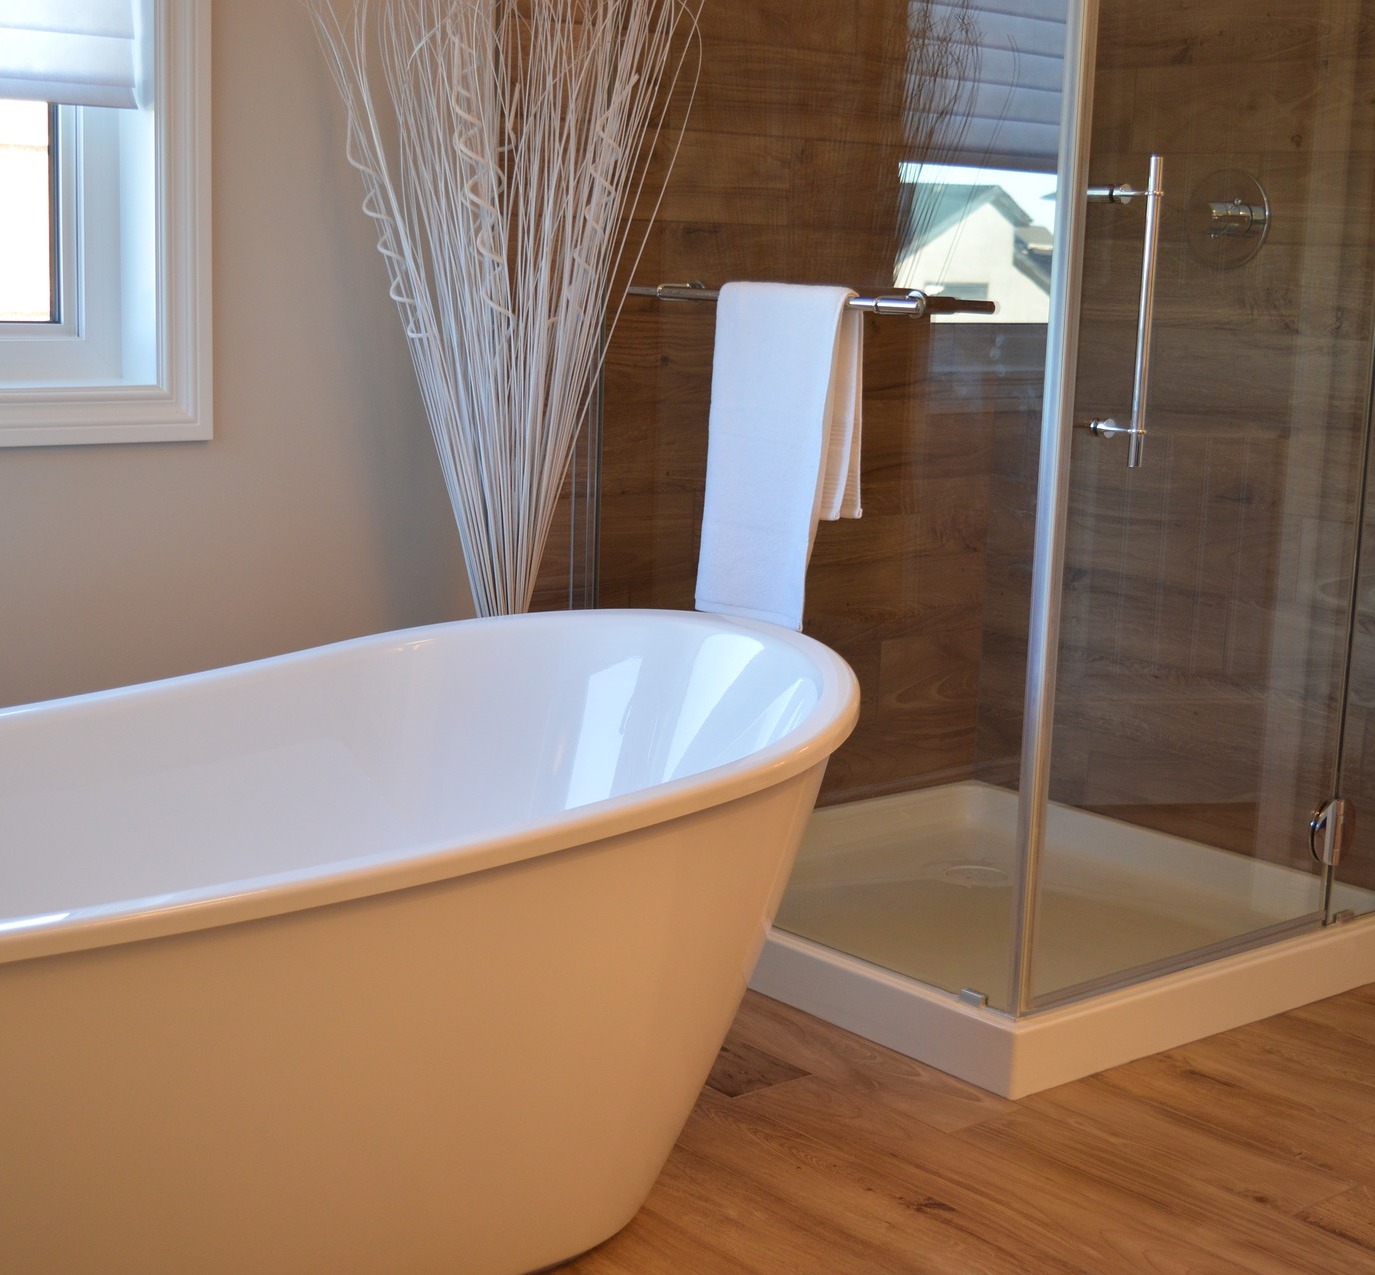 Preise für Badezimmer renovieren sanieren modernisieren